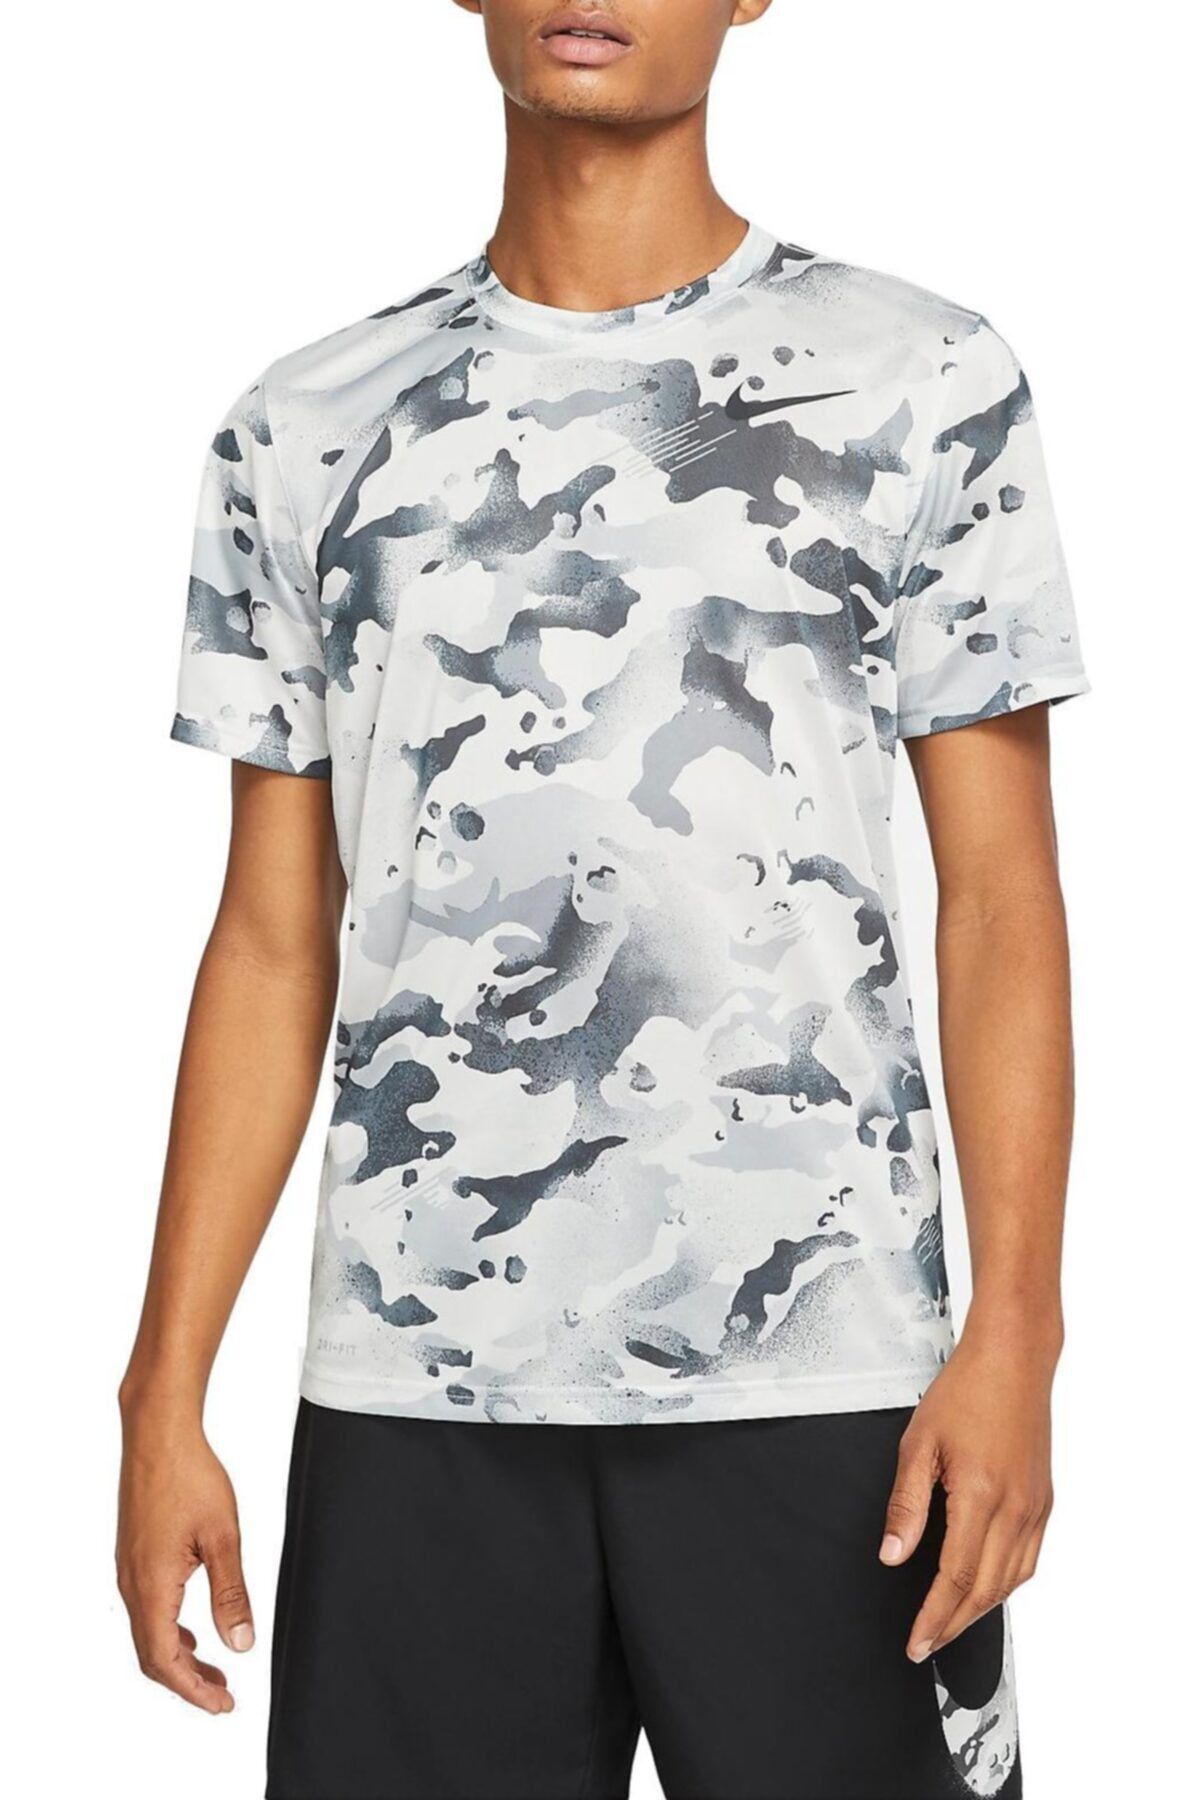 Nike Dri-fıt Men's Camo Training Erkek T-shirt